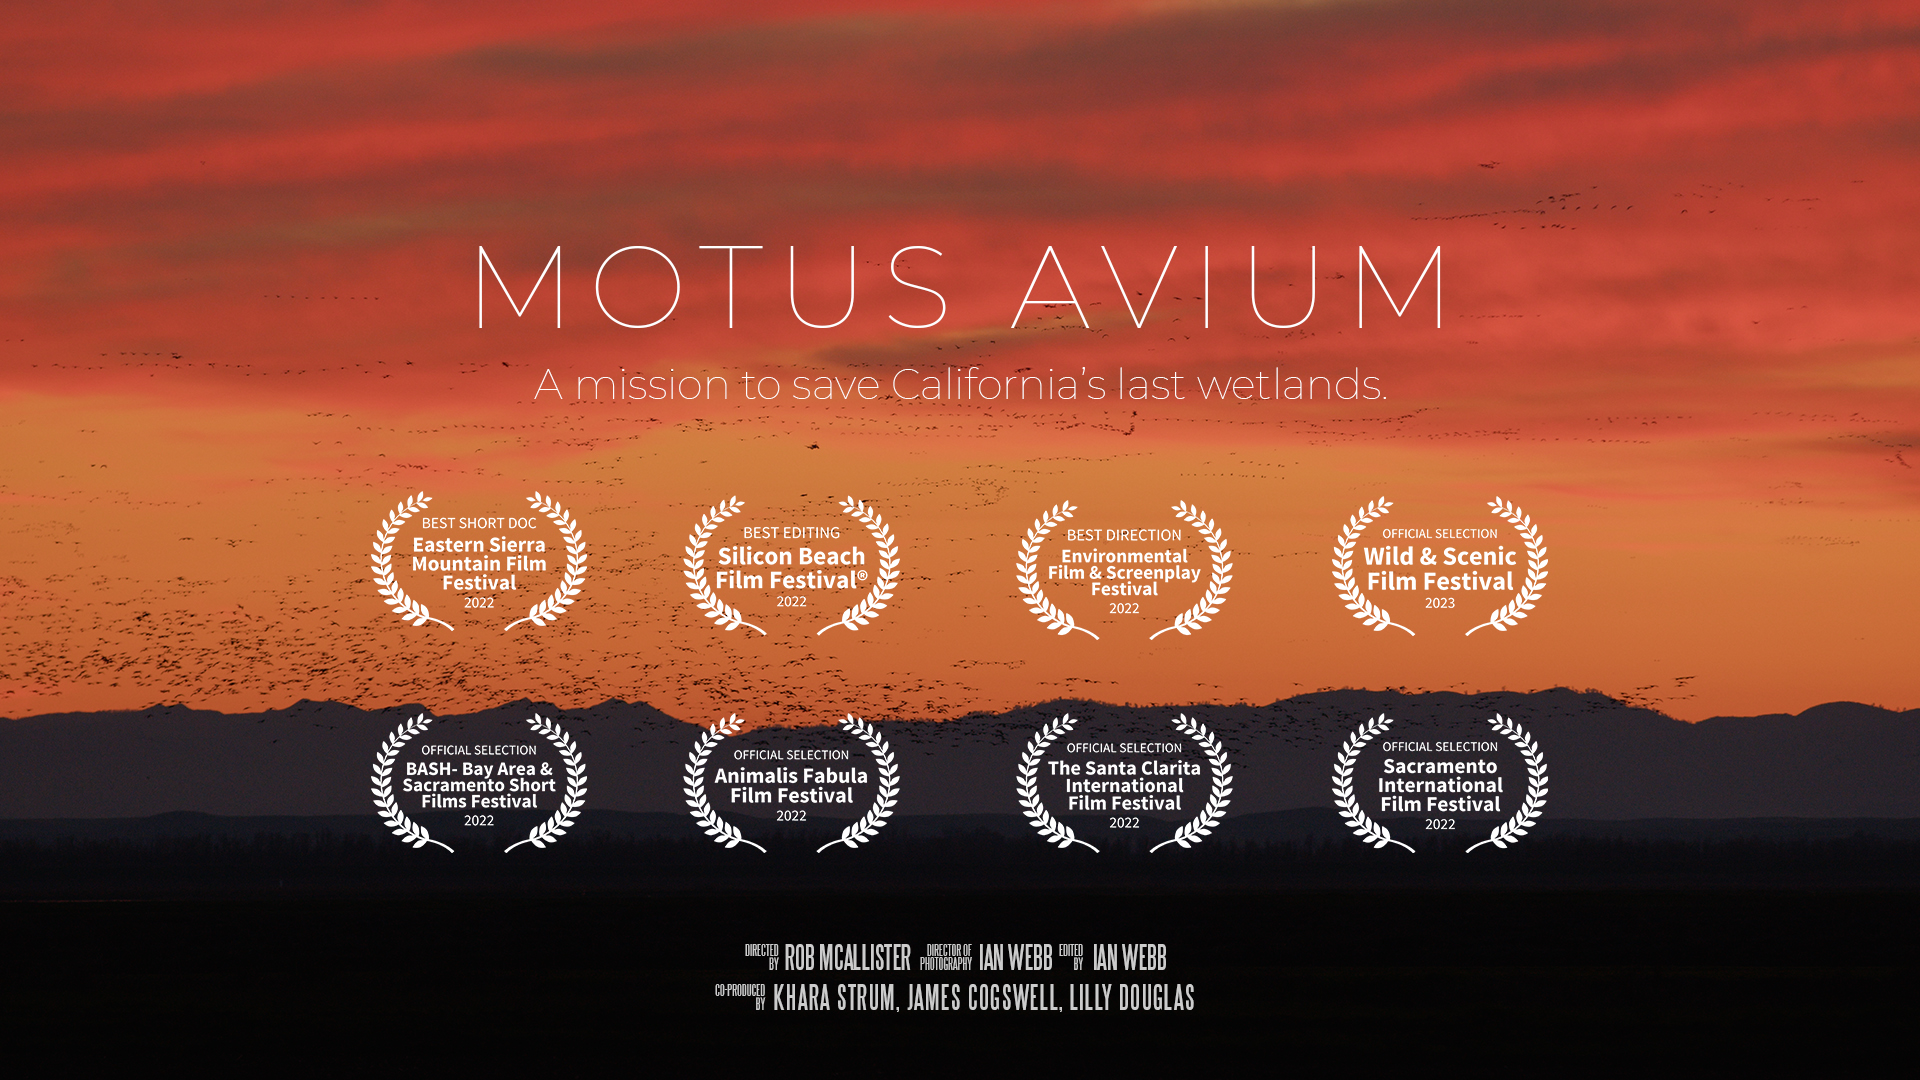 MOTUS AVIUM: A mission to save California’s last wetlands.